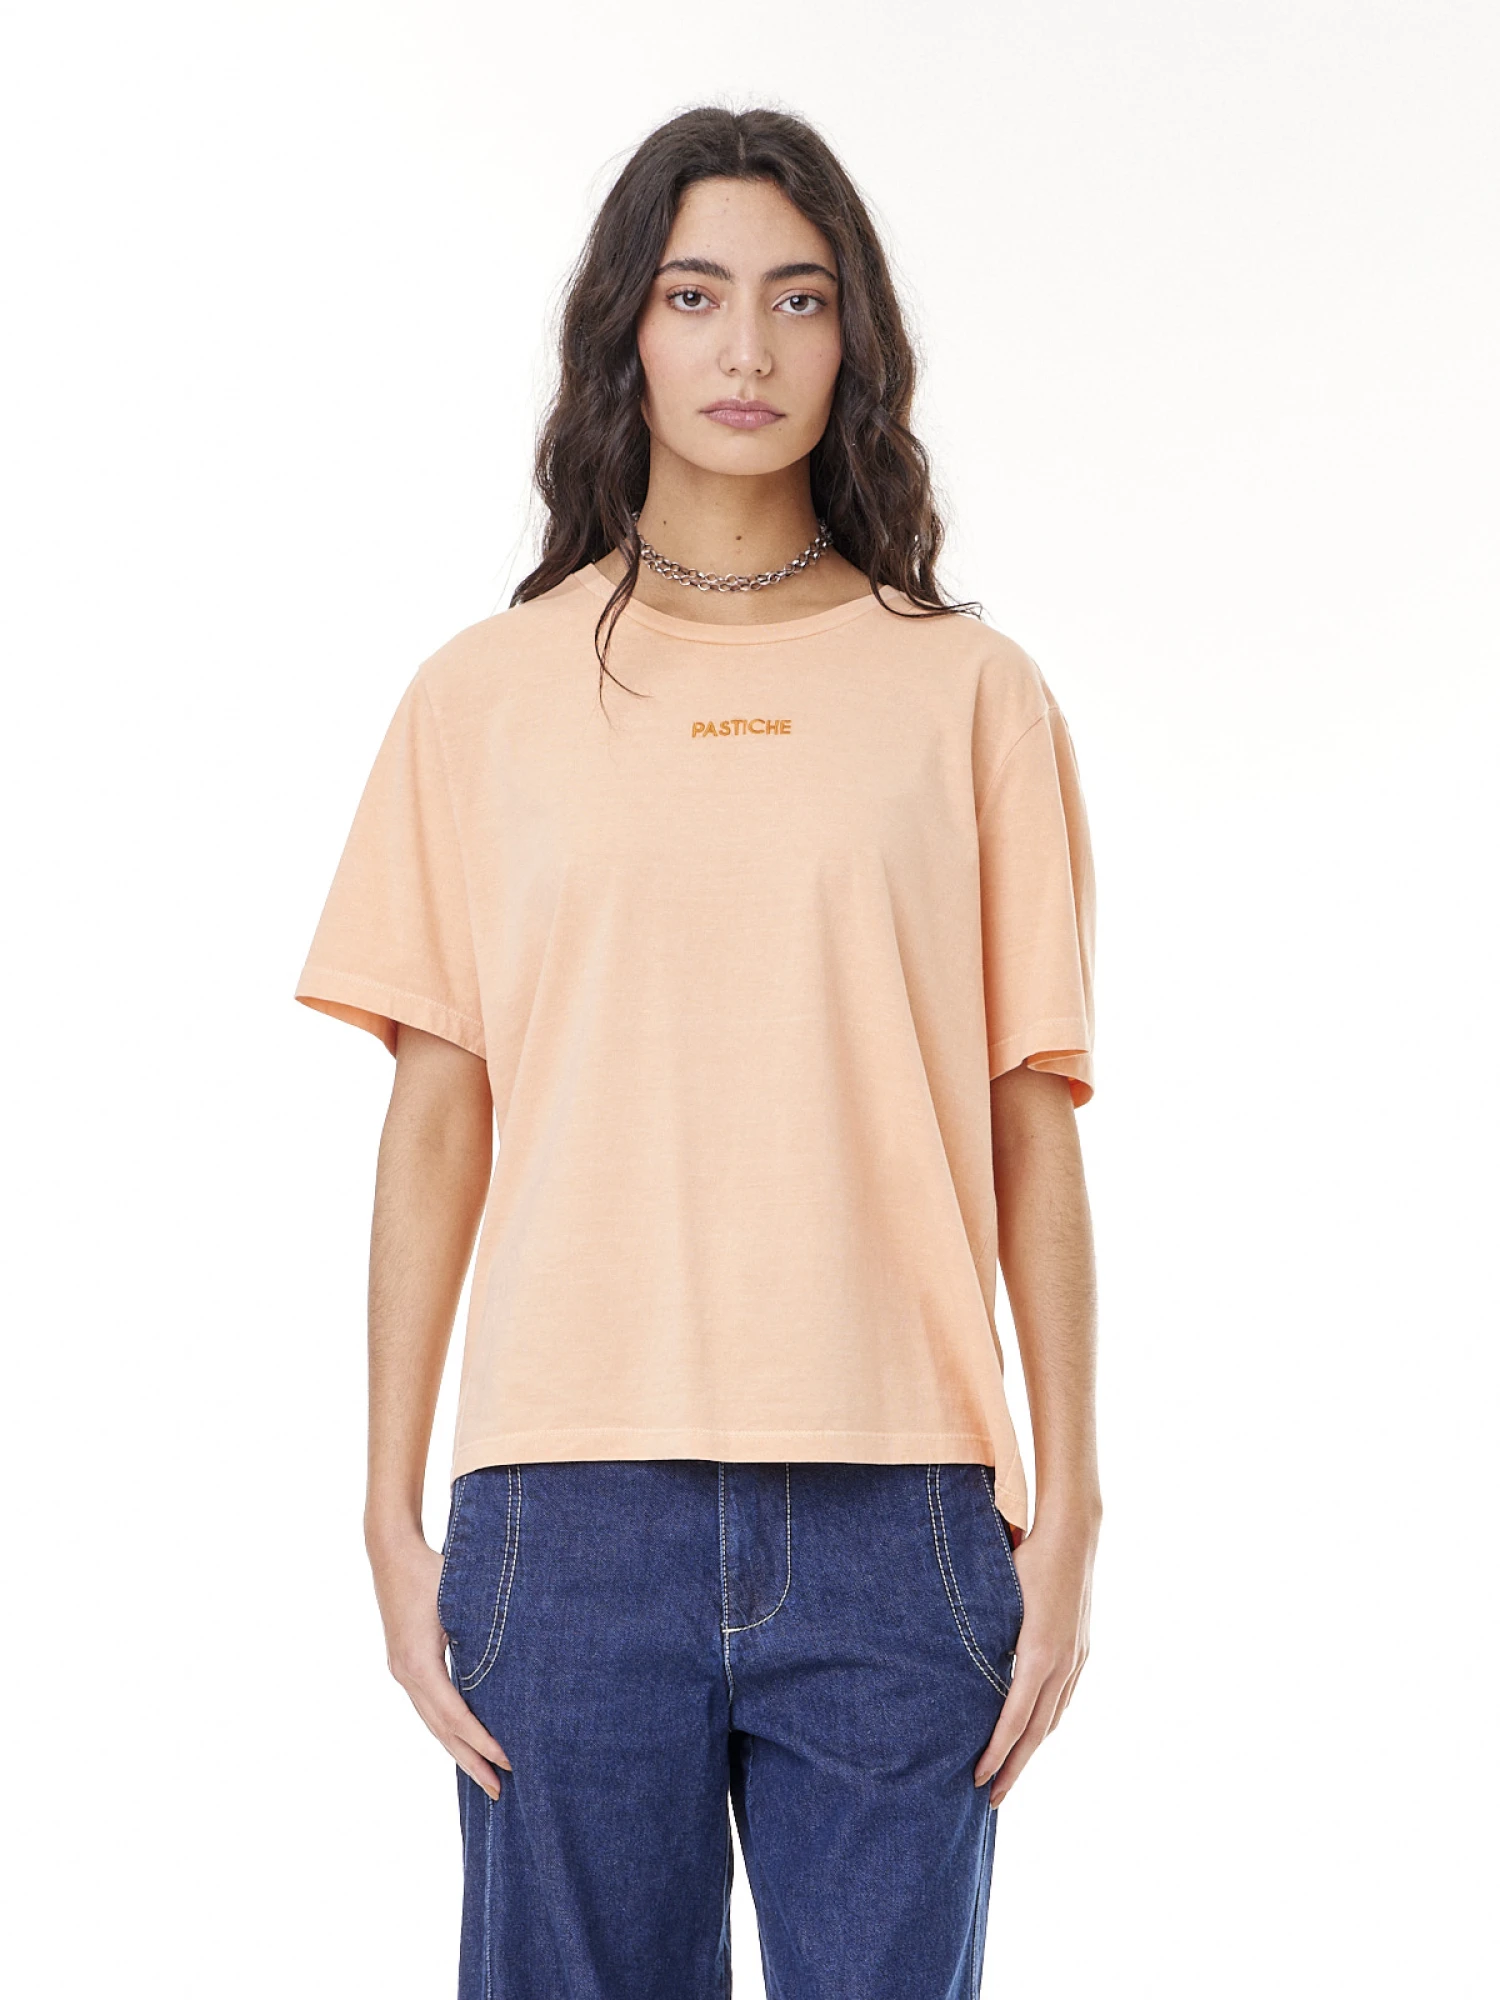 T-shirt Atenas naranja xl